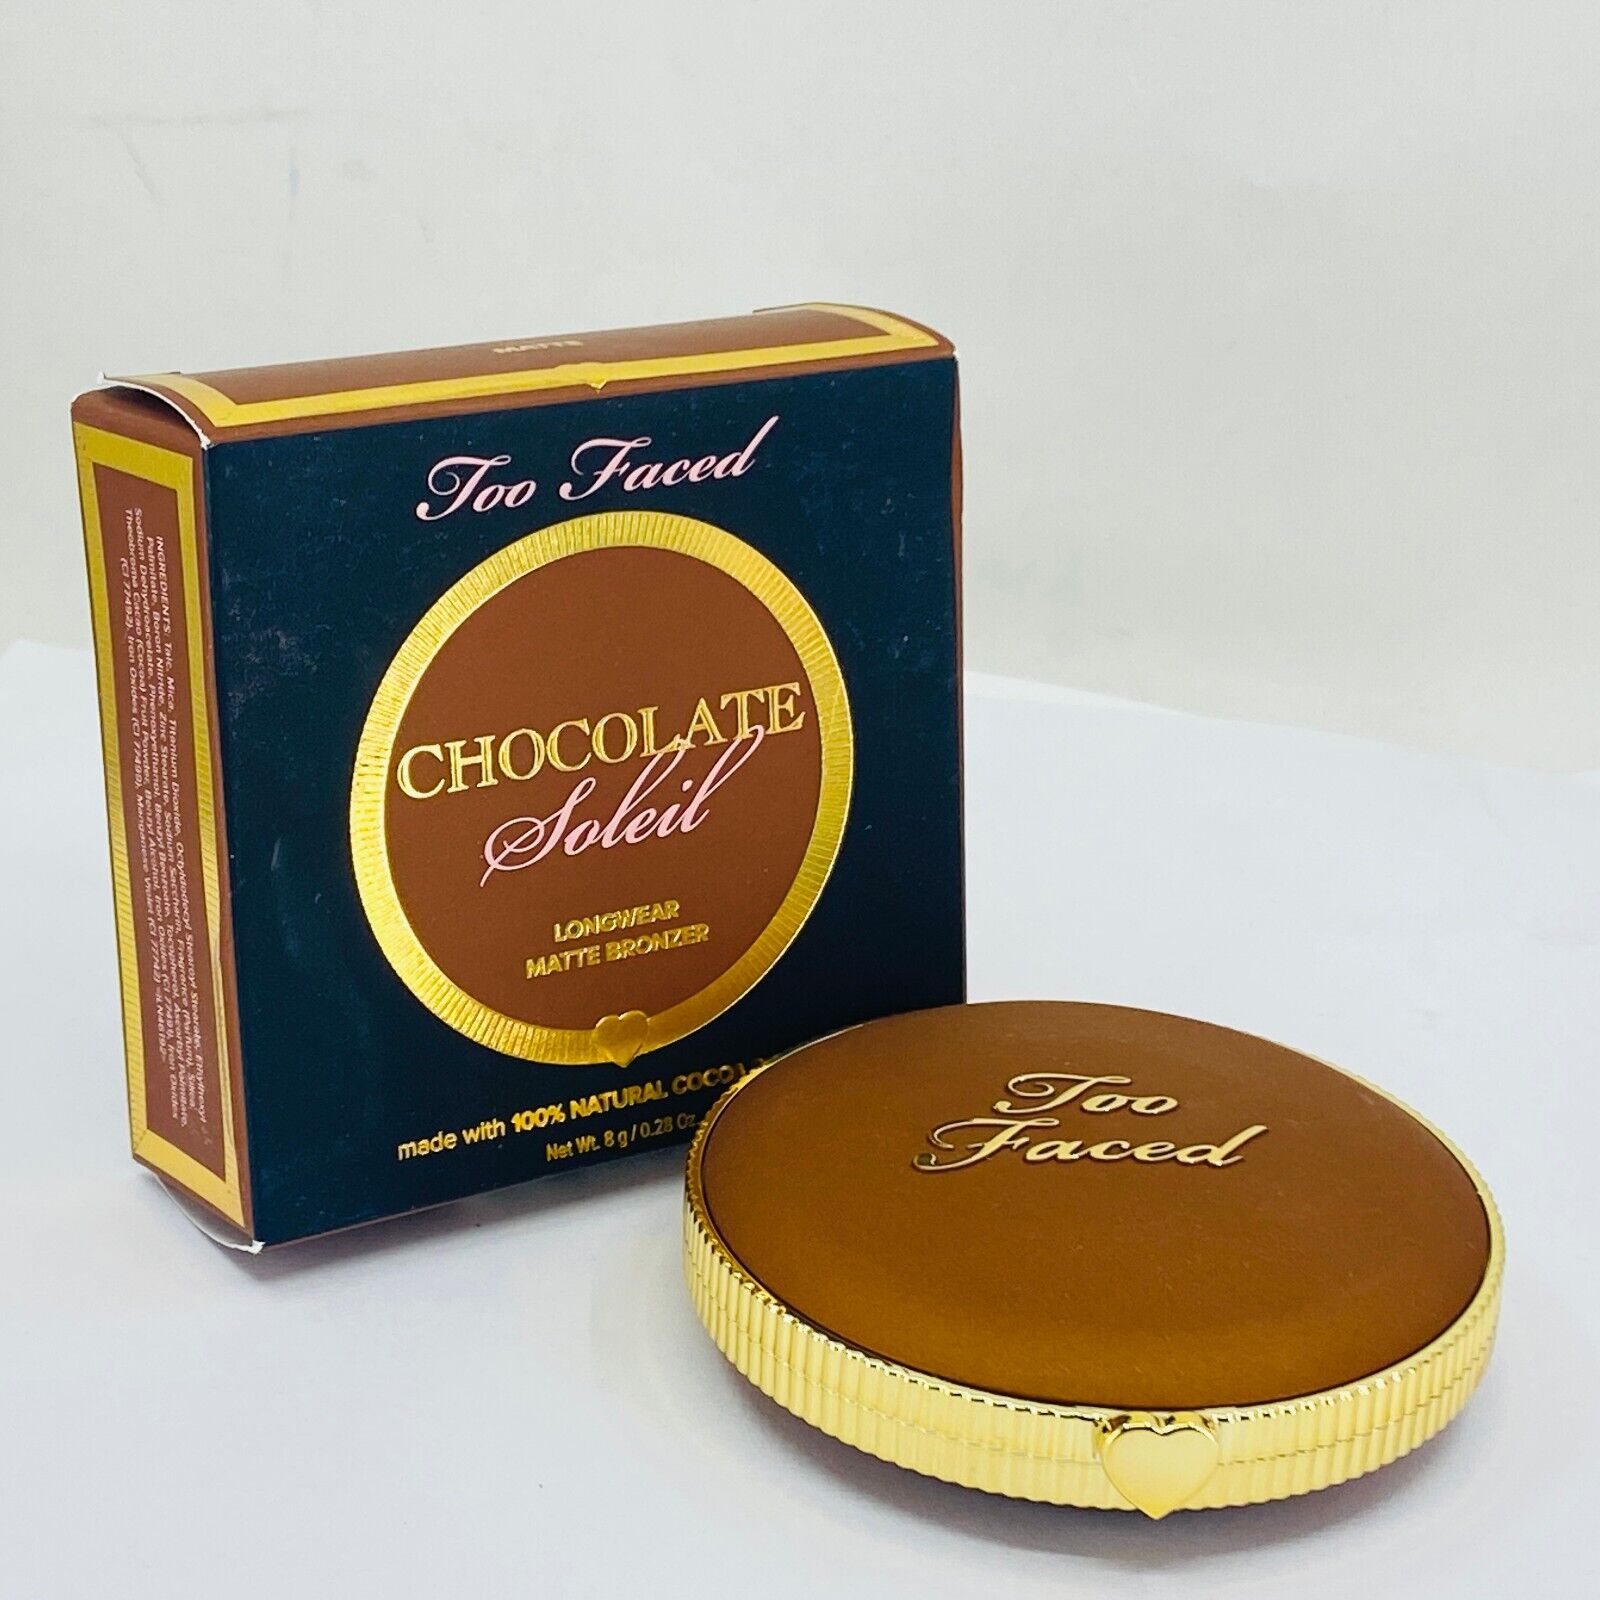 Too Faced Dark Chocolate Soleil Long-Wear Matte Bronzer - 0.28 oz./8g - NIB